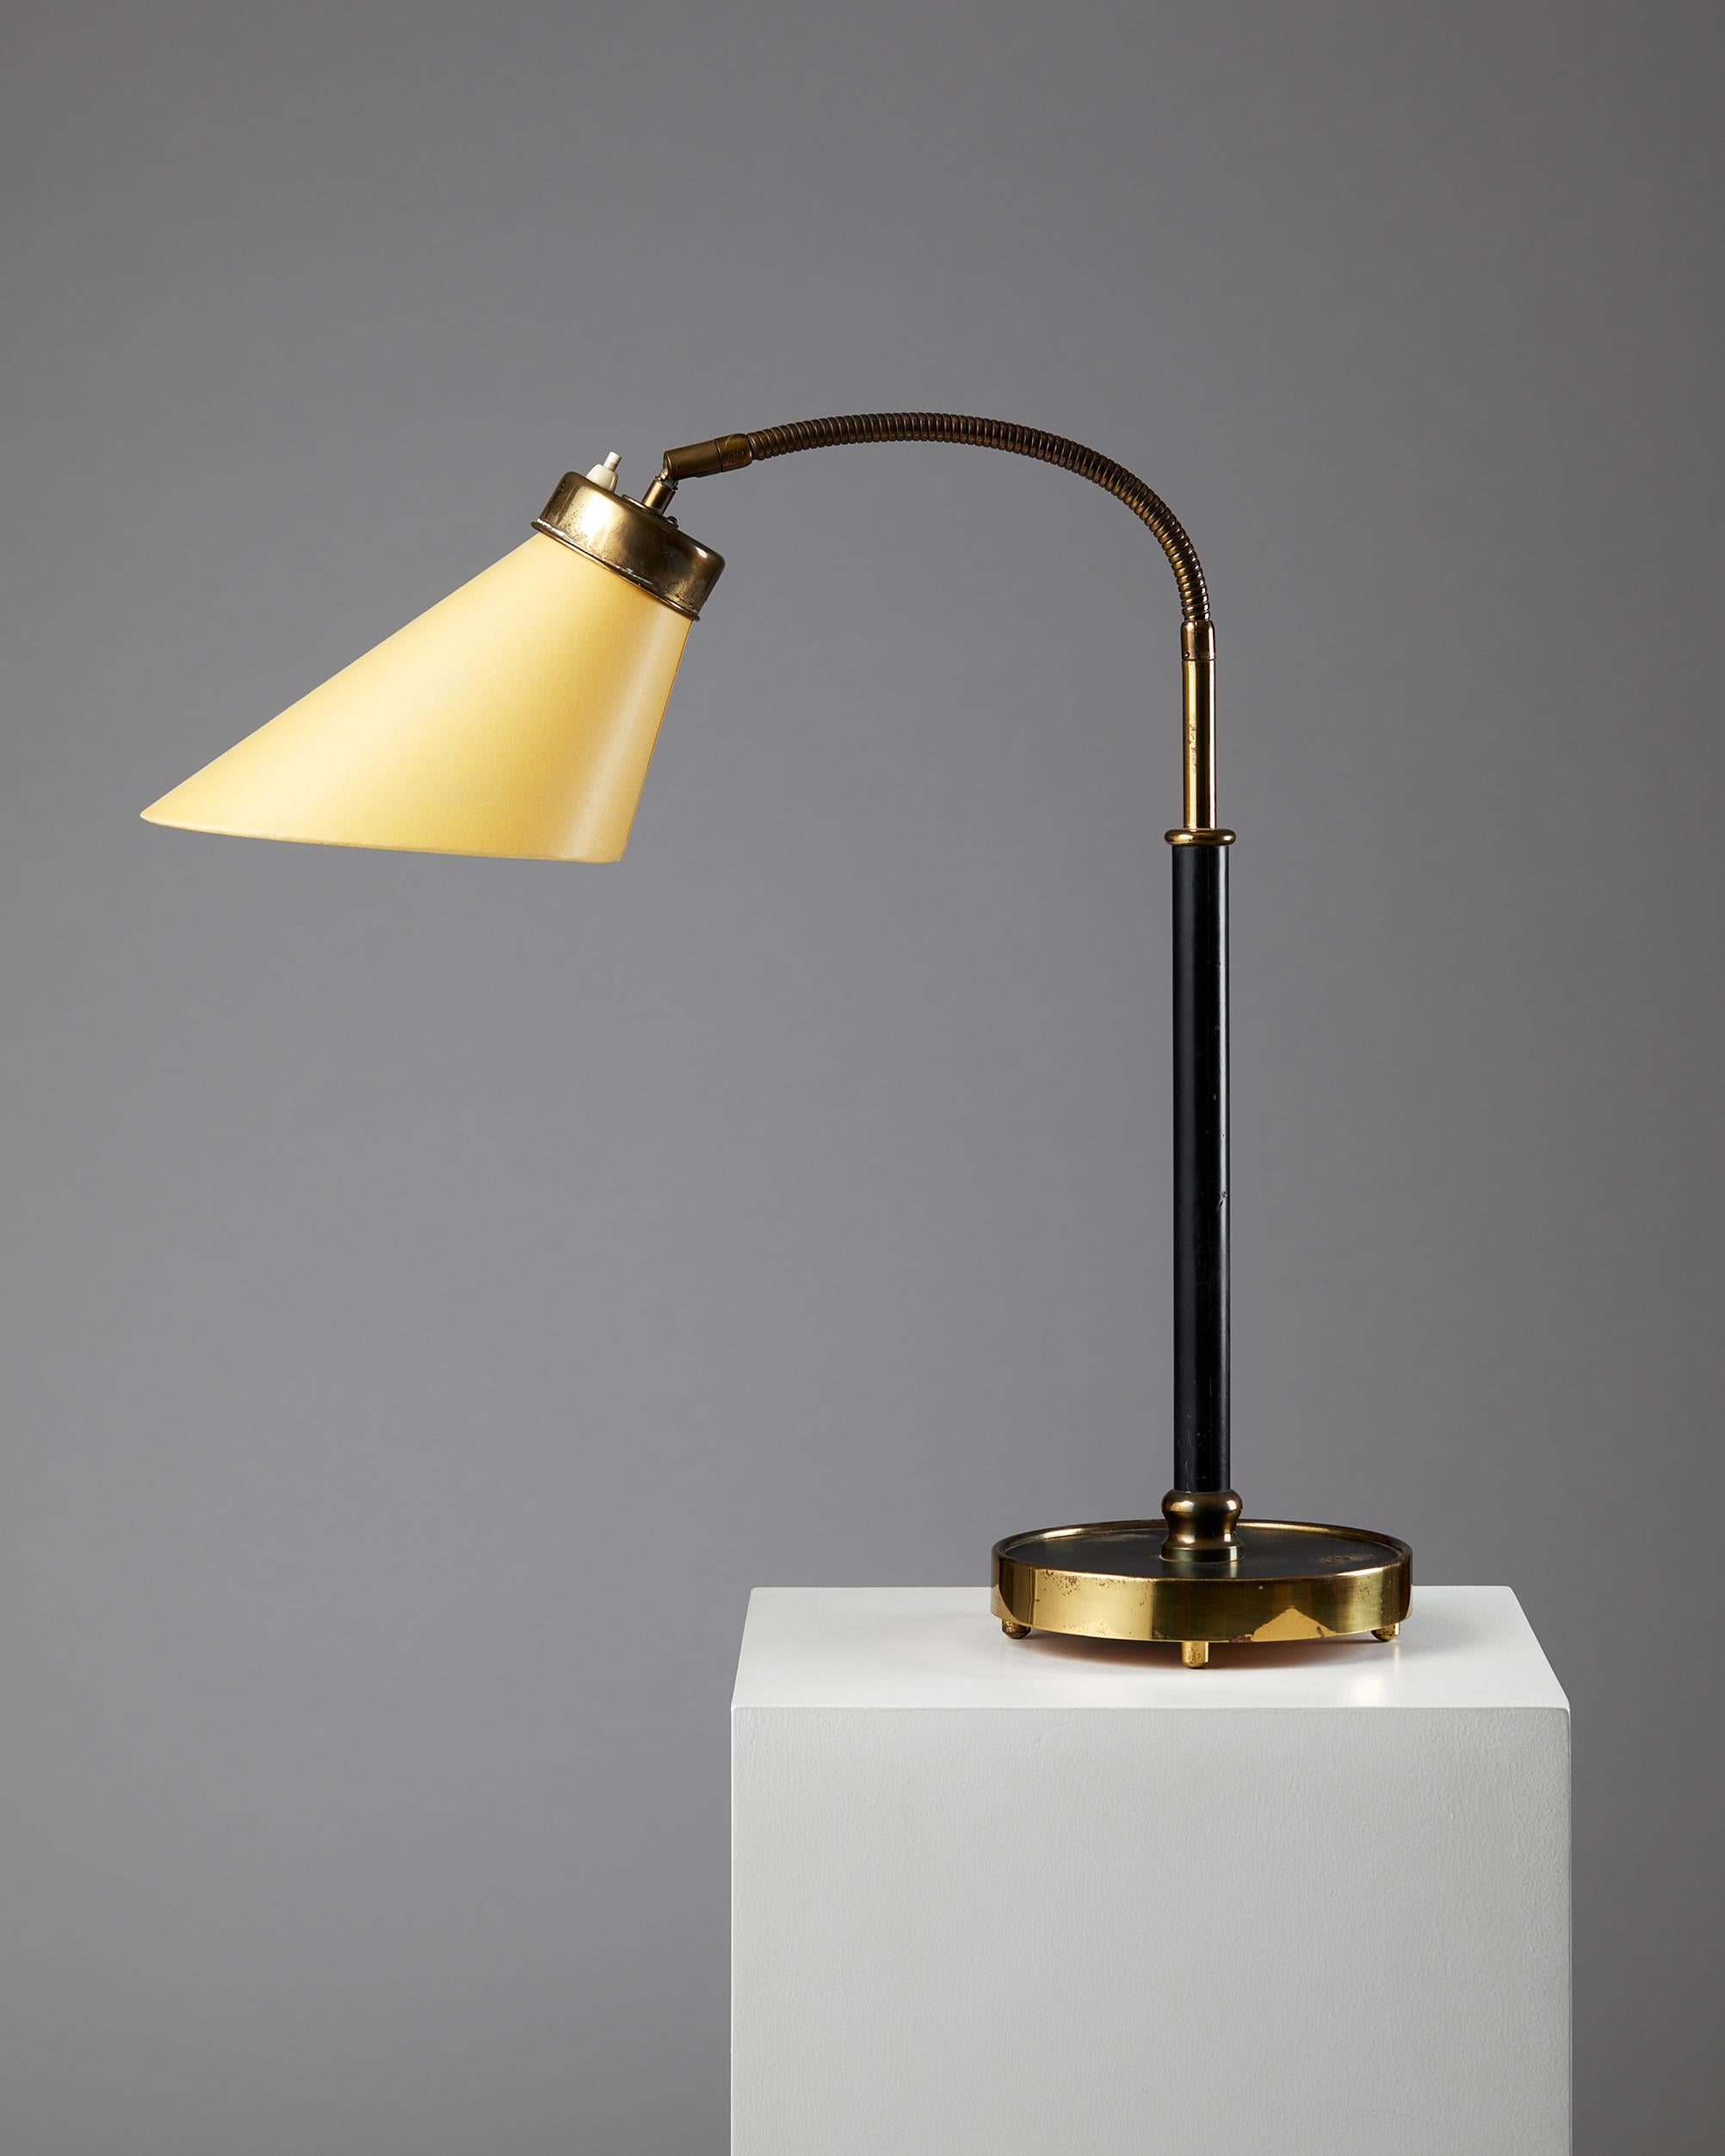 Mid-Century Modern Table Lamp Model 2434 Designed by Josef Frank for Svenskt Tenn